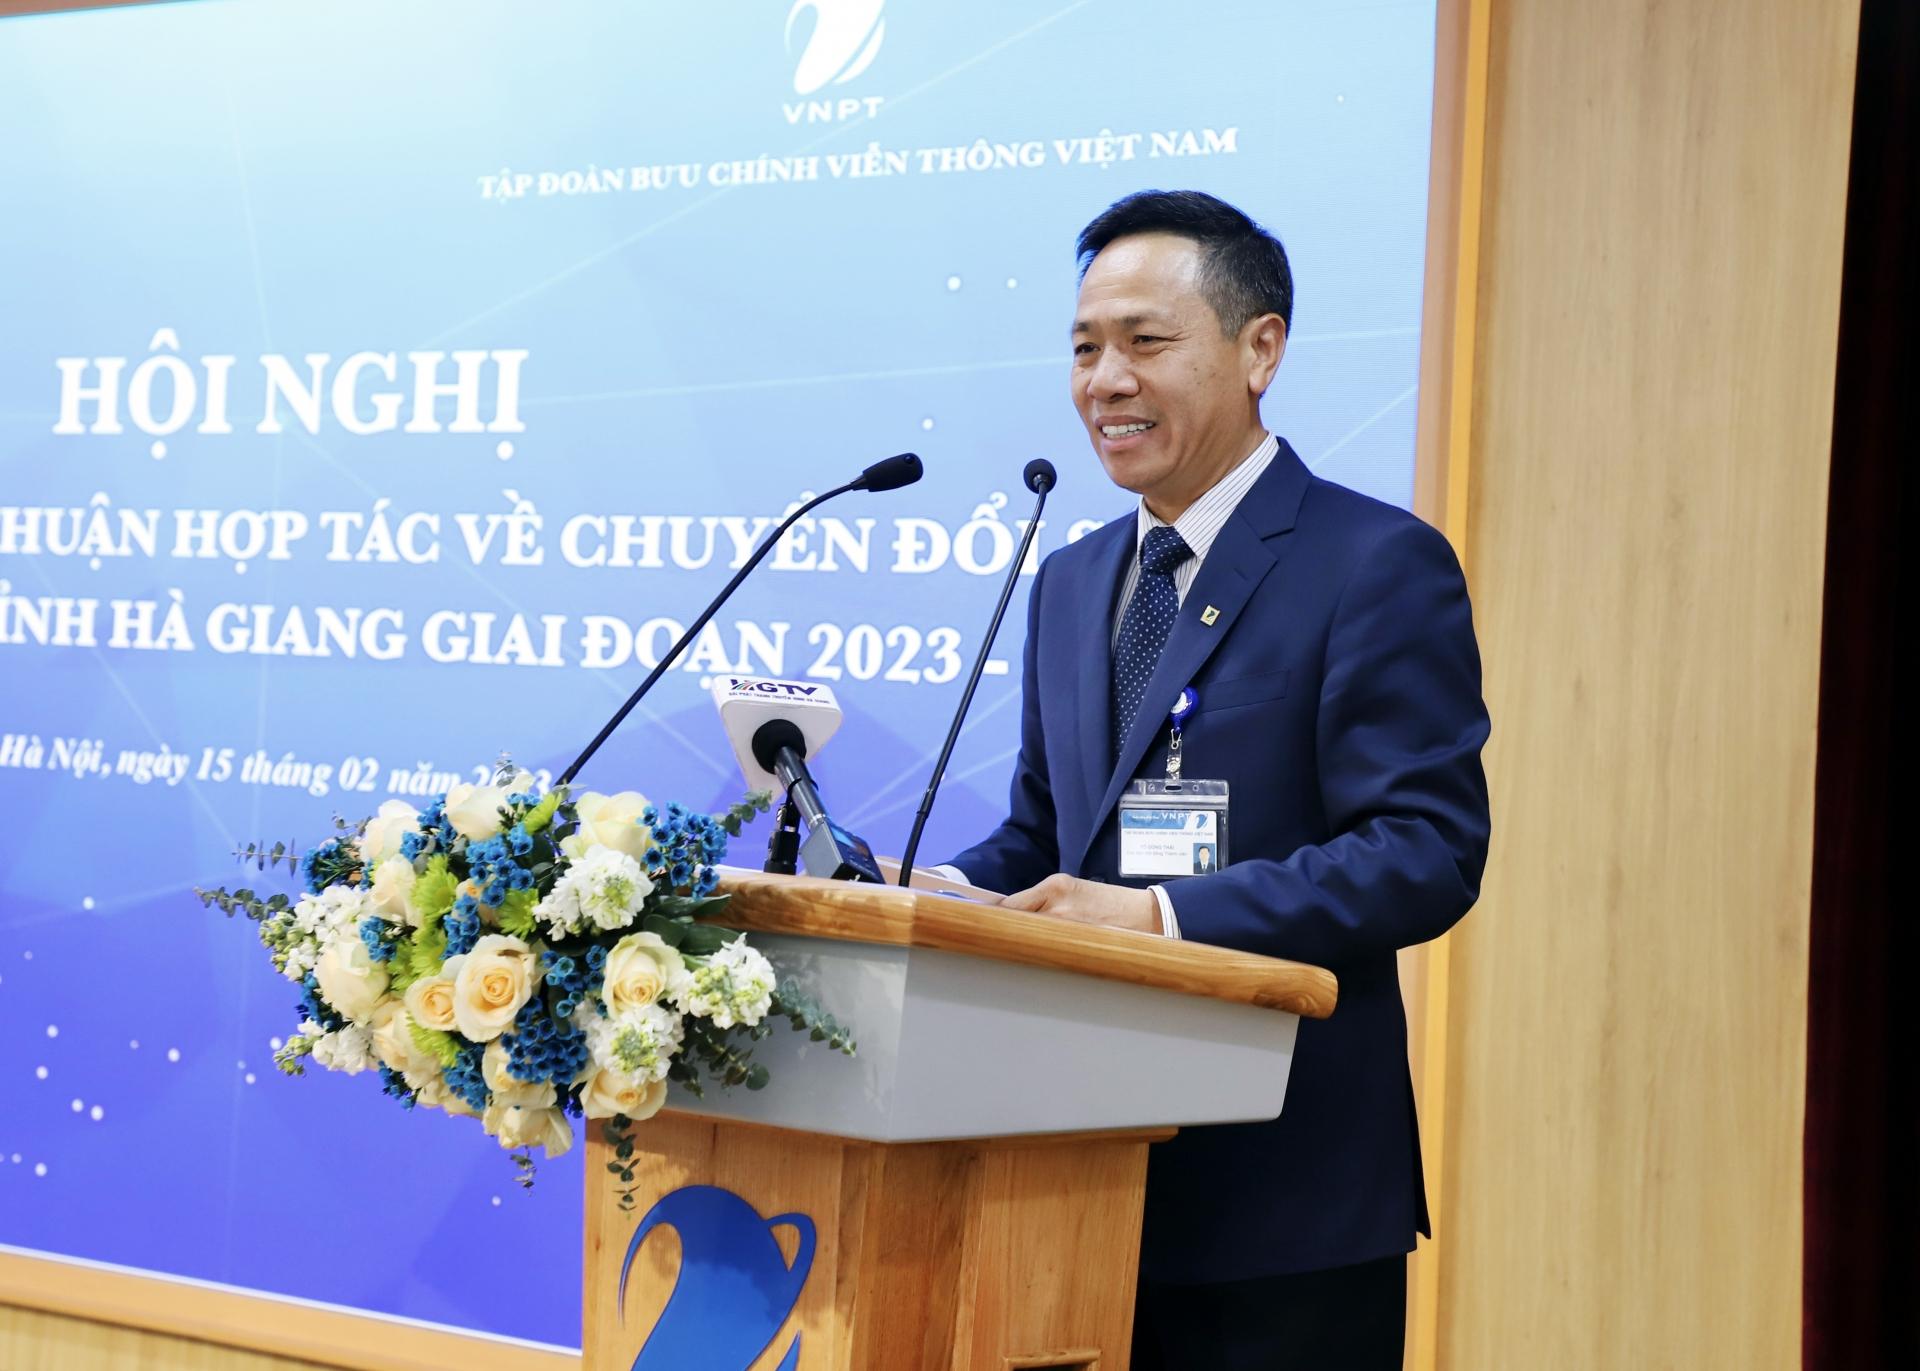 Chủ tịch Hội đồng thành viên Tập đoàn VNPT Tô Dũng Thái phát biểu tại hội nghị